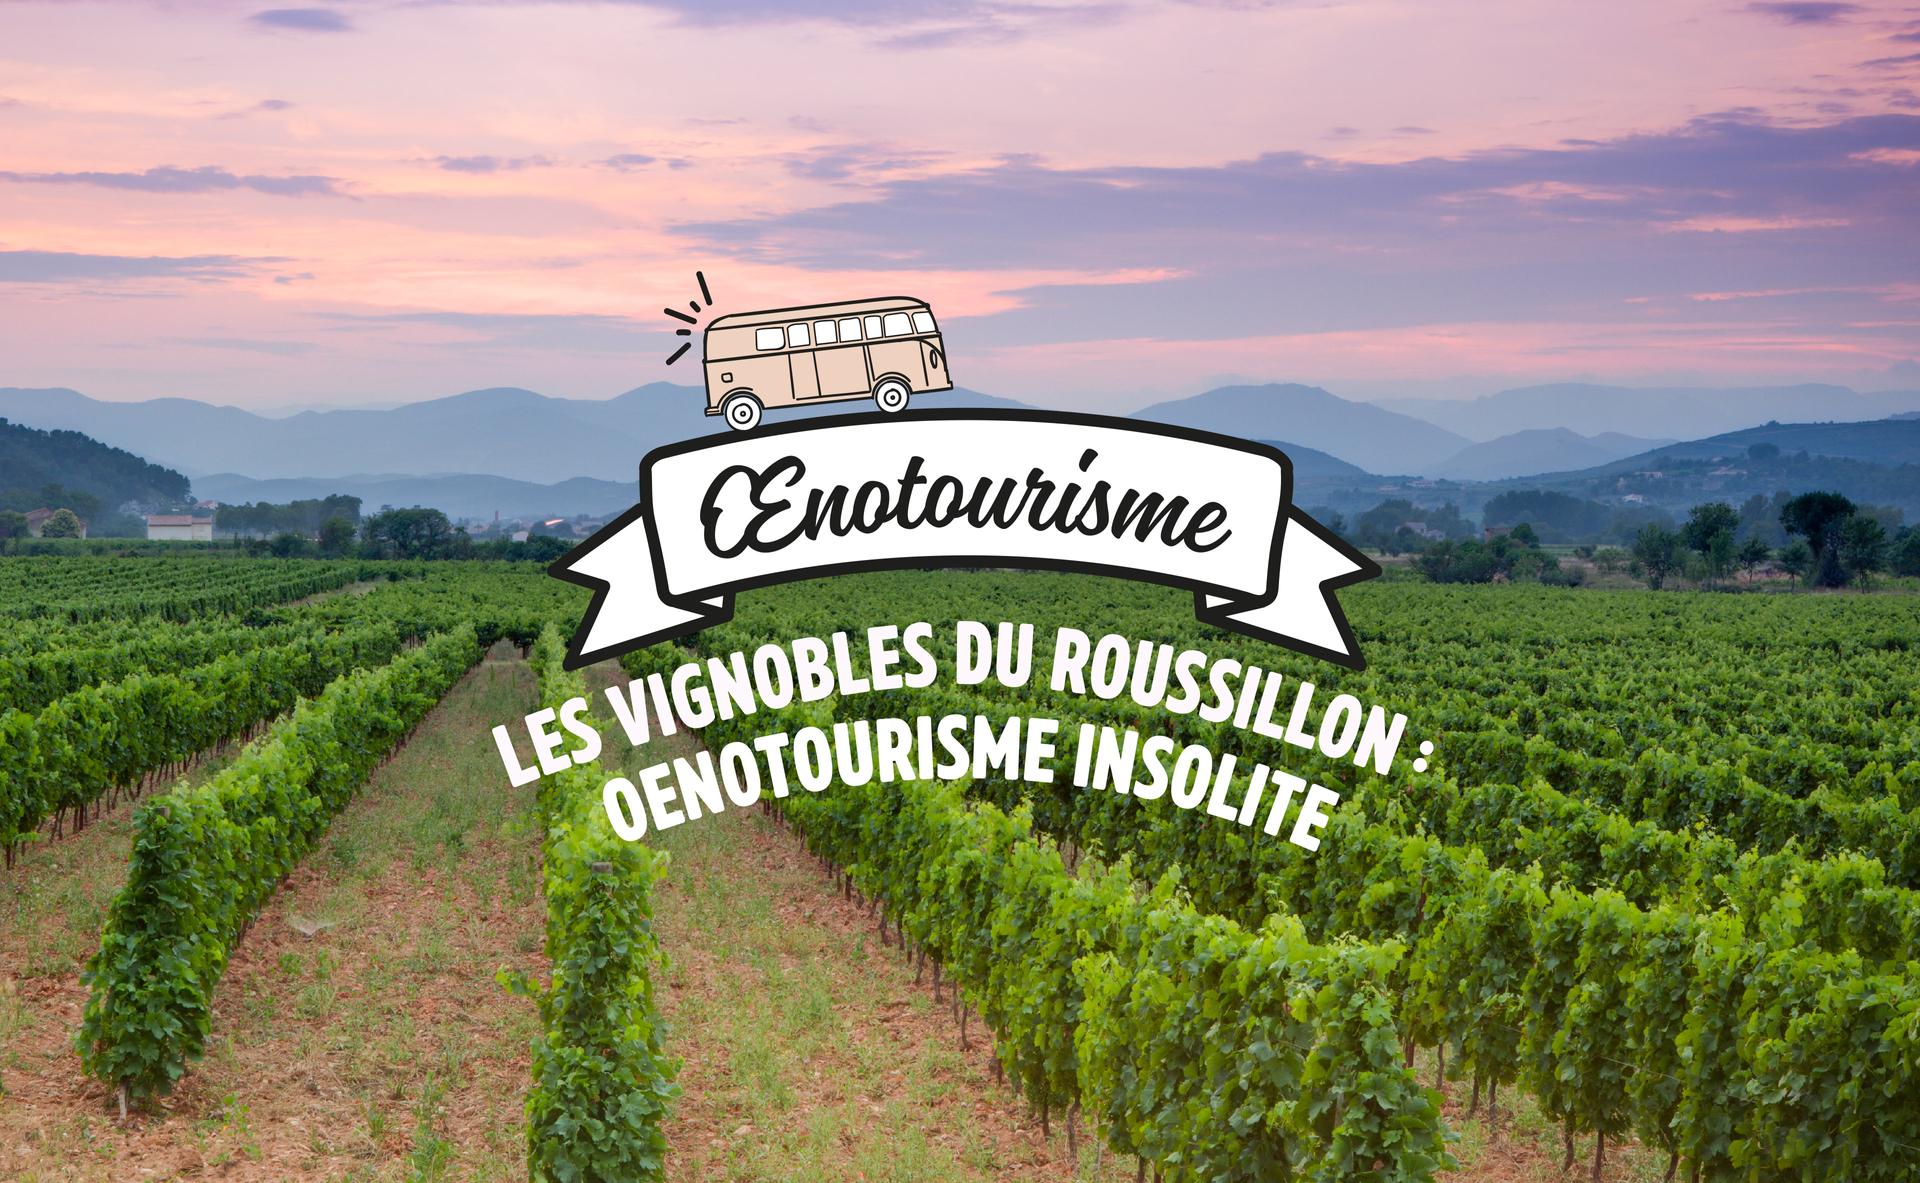 Les vignobles du Roussillon : œnotourisme insolite